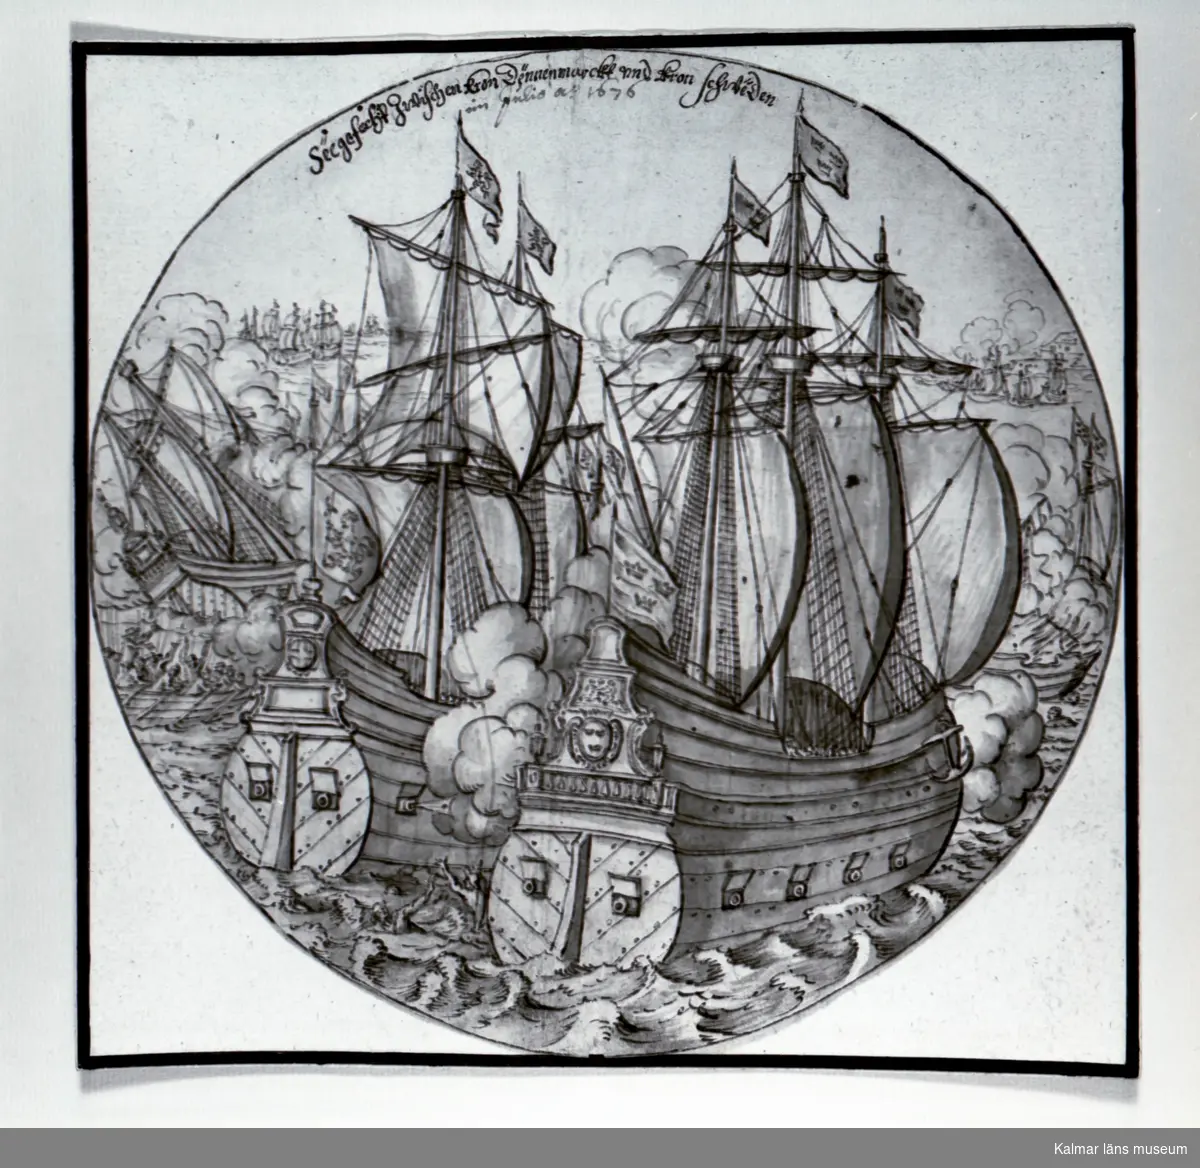 Kronan och segelfartyg från Danmark i strid, rund akvarellteckning.